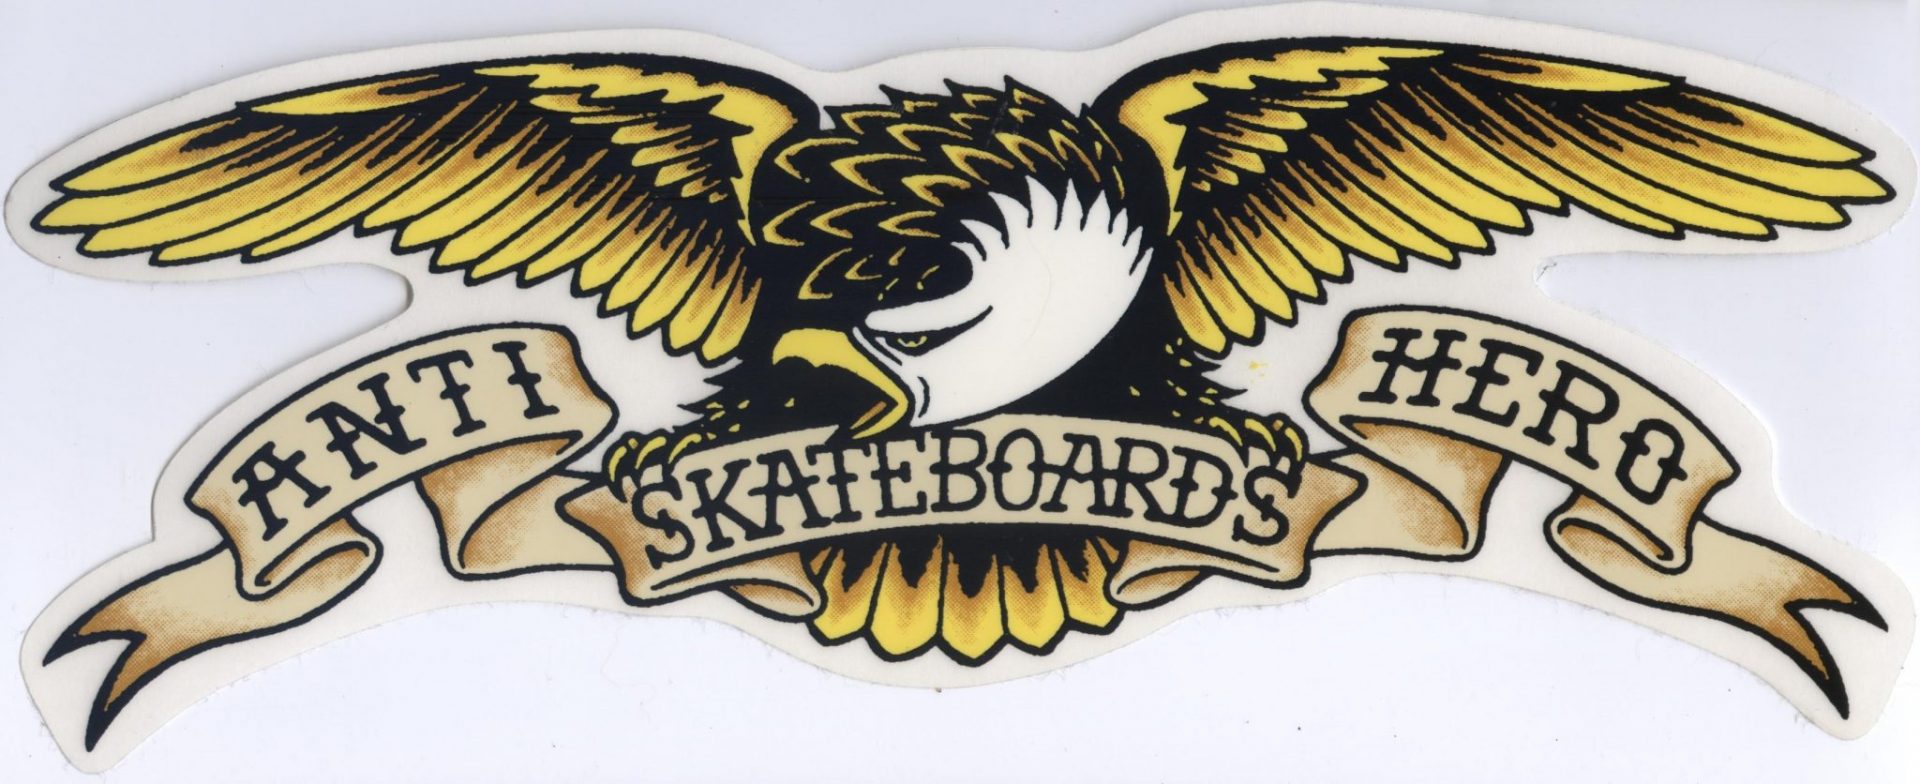 Antihero skateboards